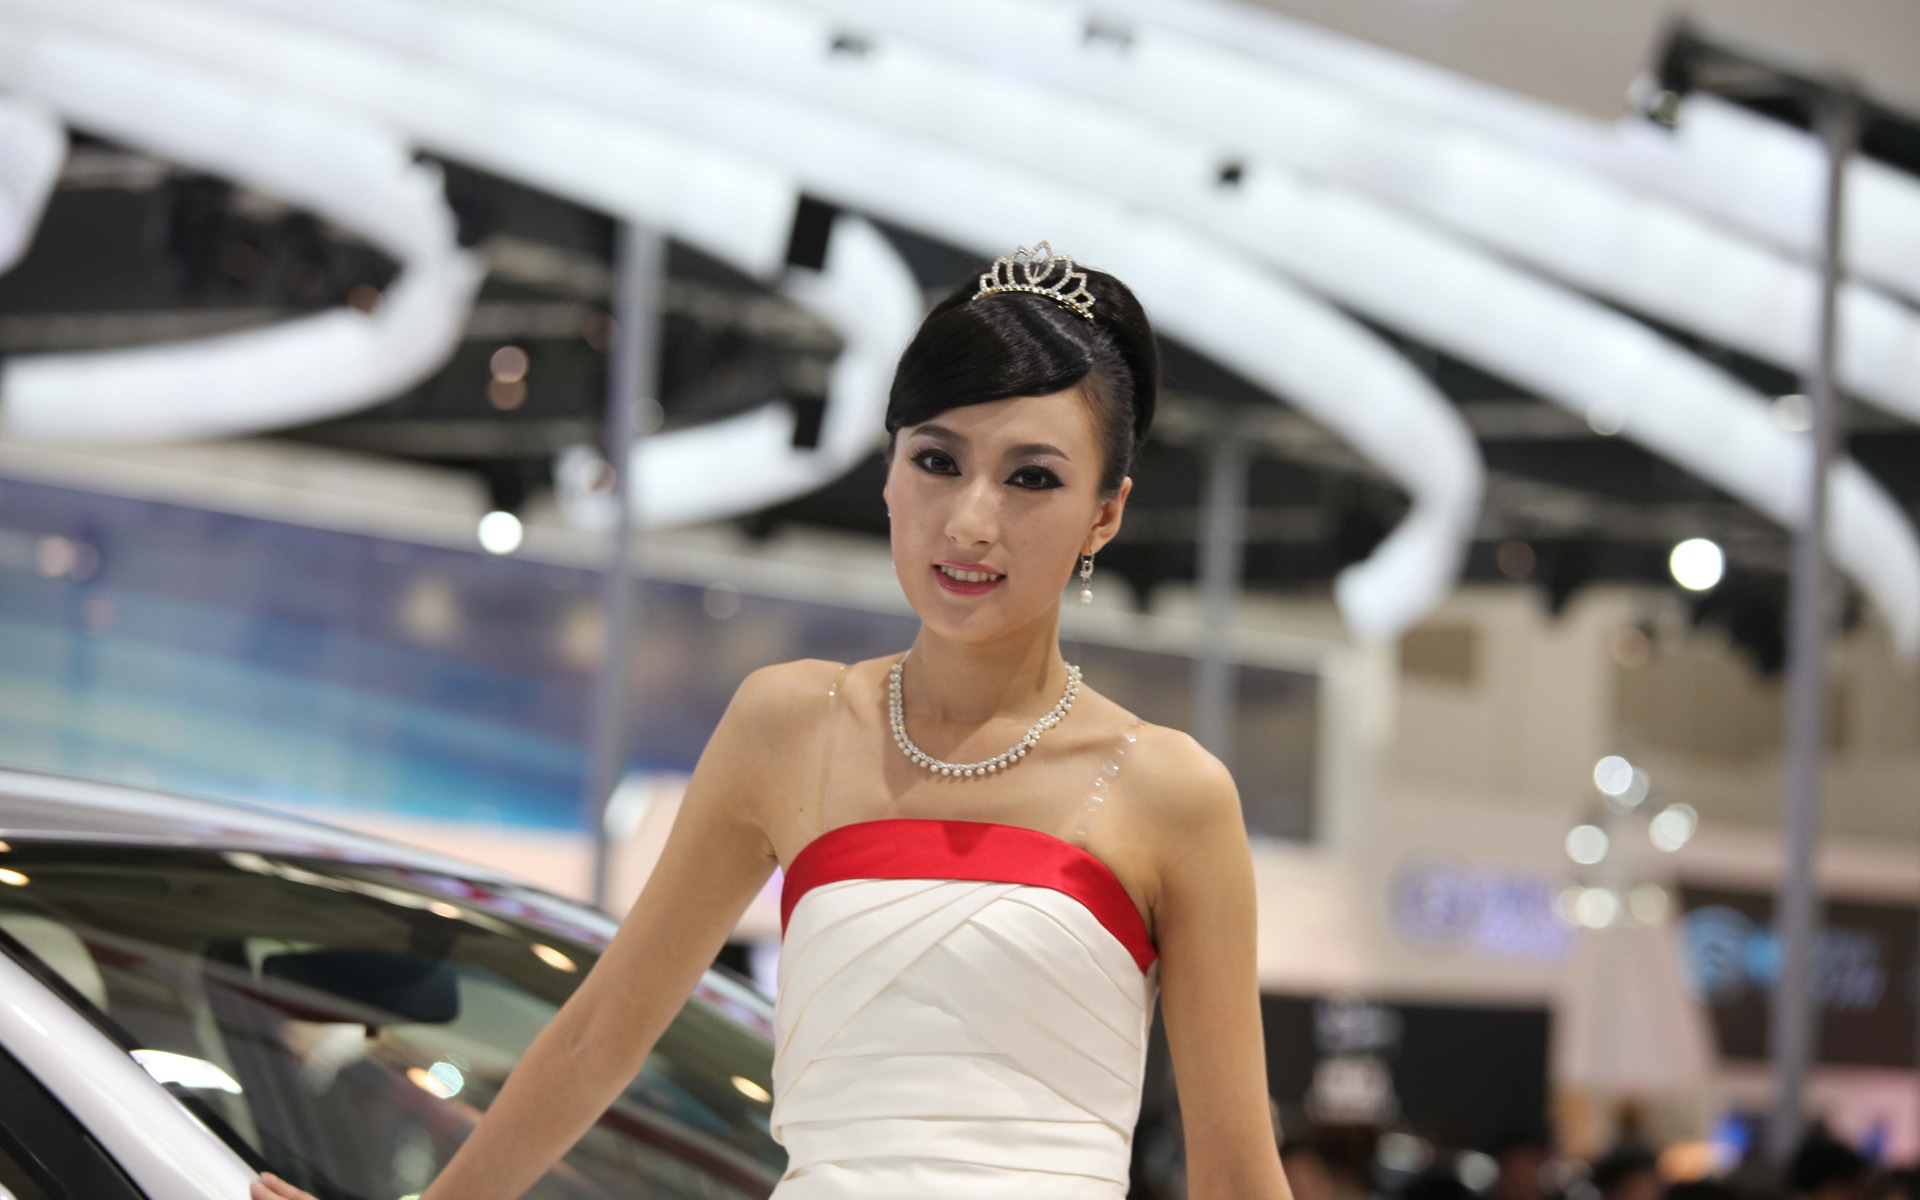 2010 v Pekingu Mezinárodním autosalonu krása (1) (vítr honí mraky práce) #27 - 1920x1200